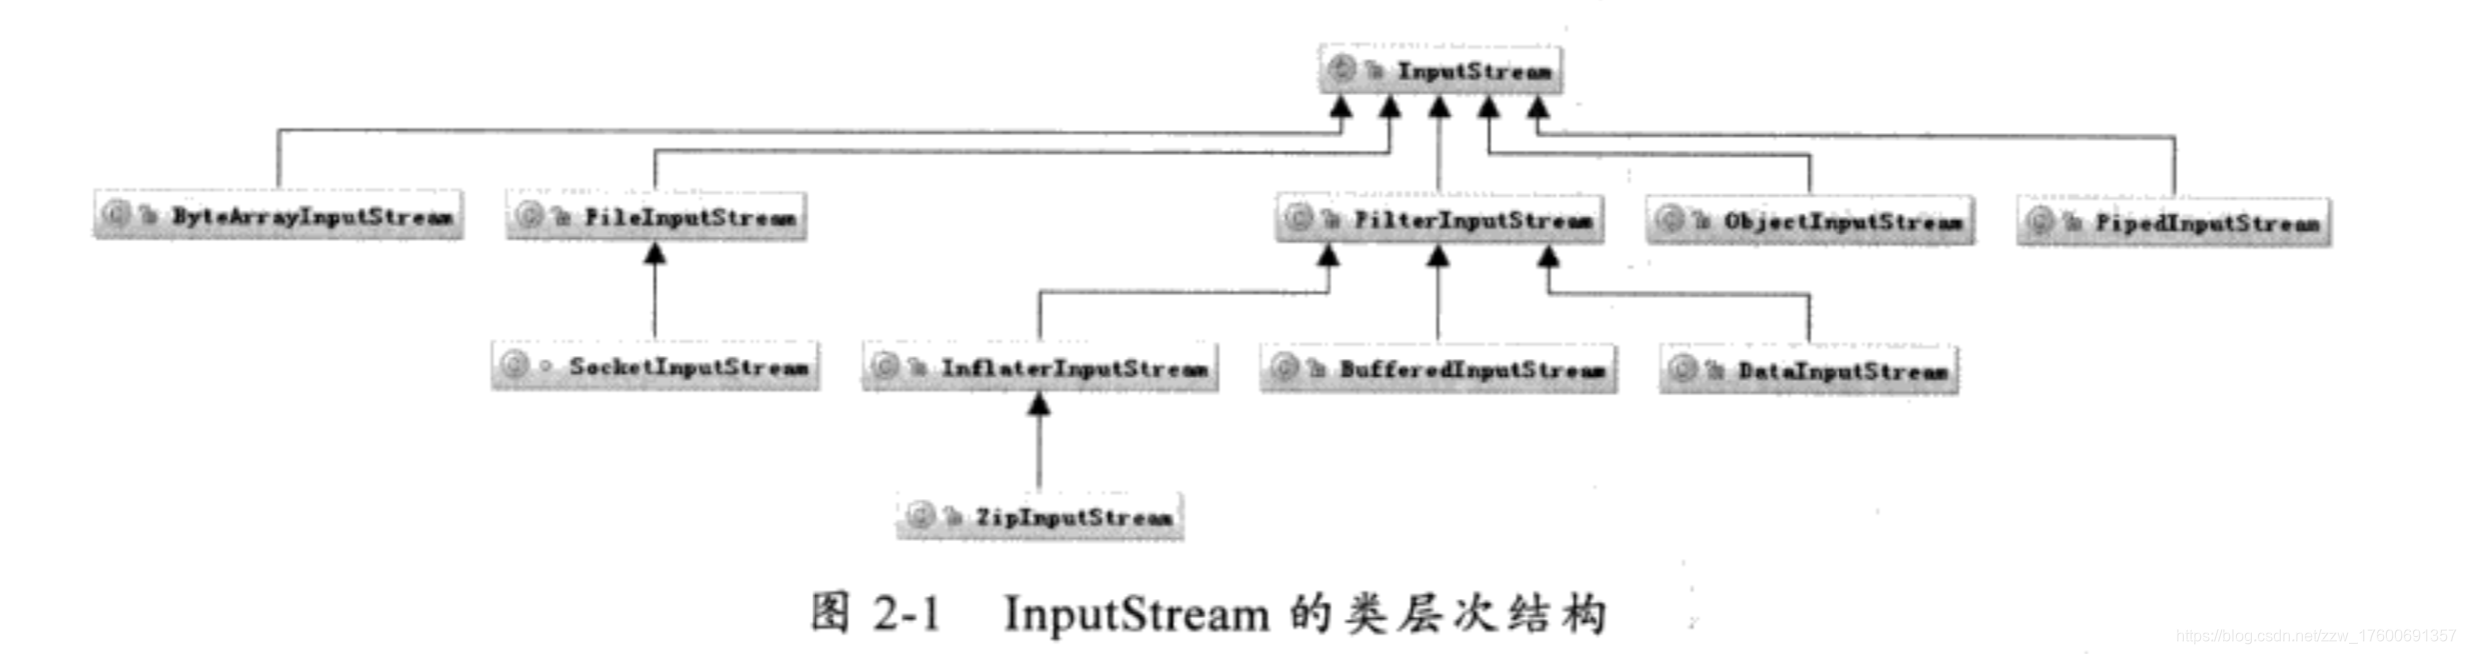 InputStream的类层次结构